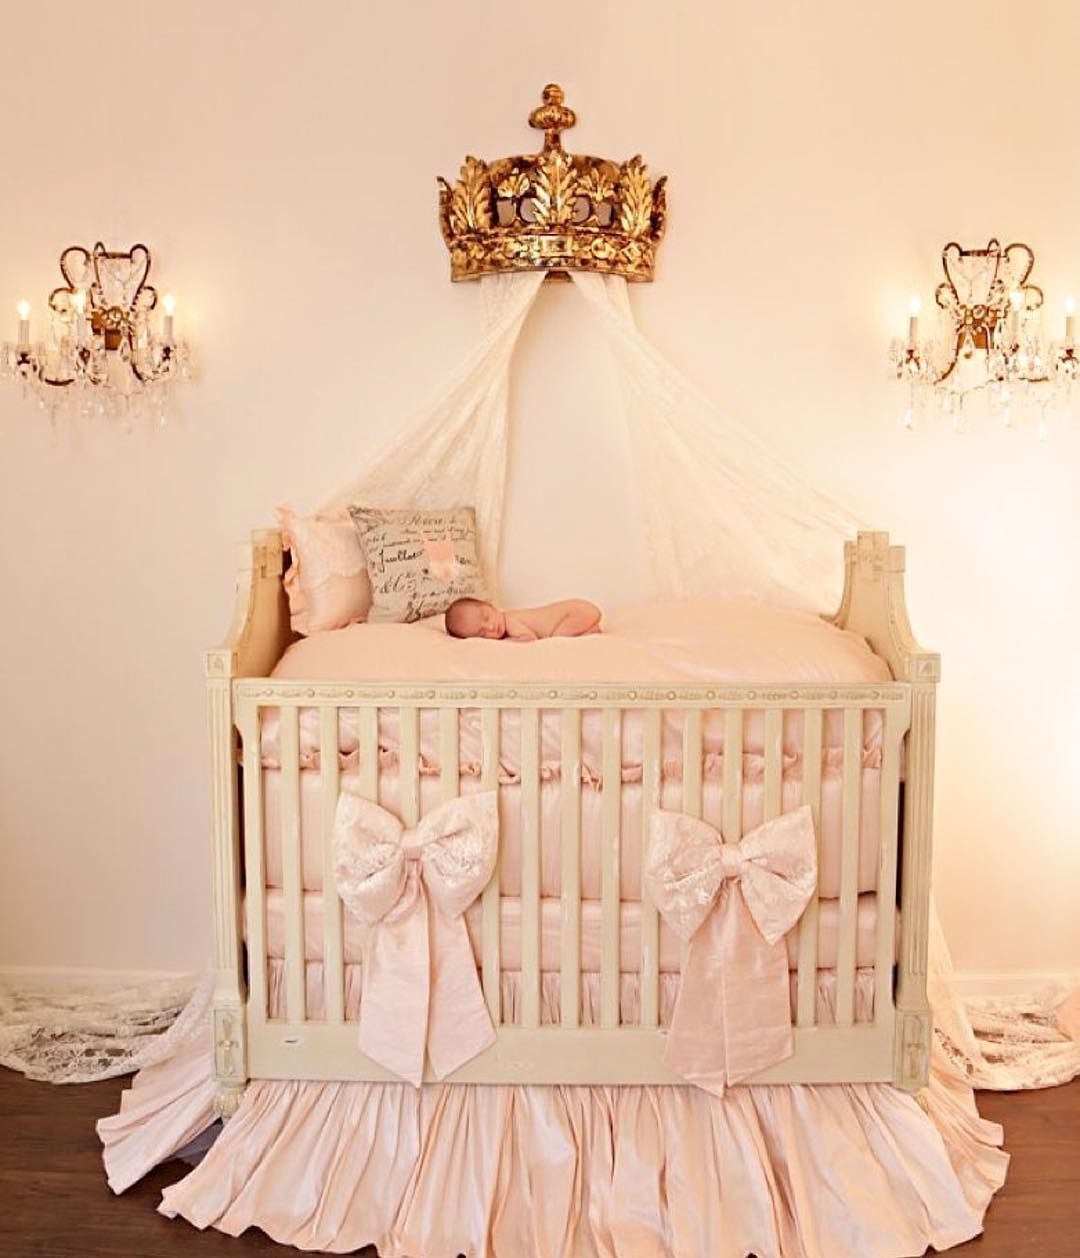 Кроватки для новорожденных девочек